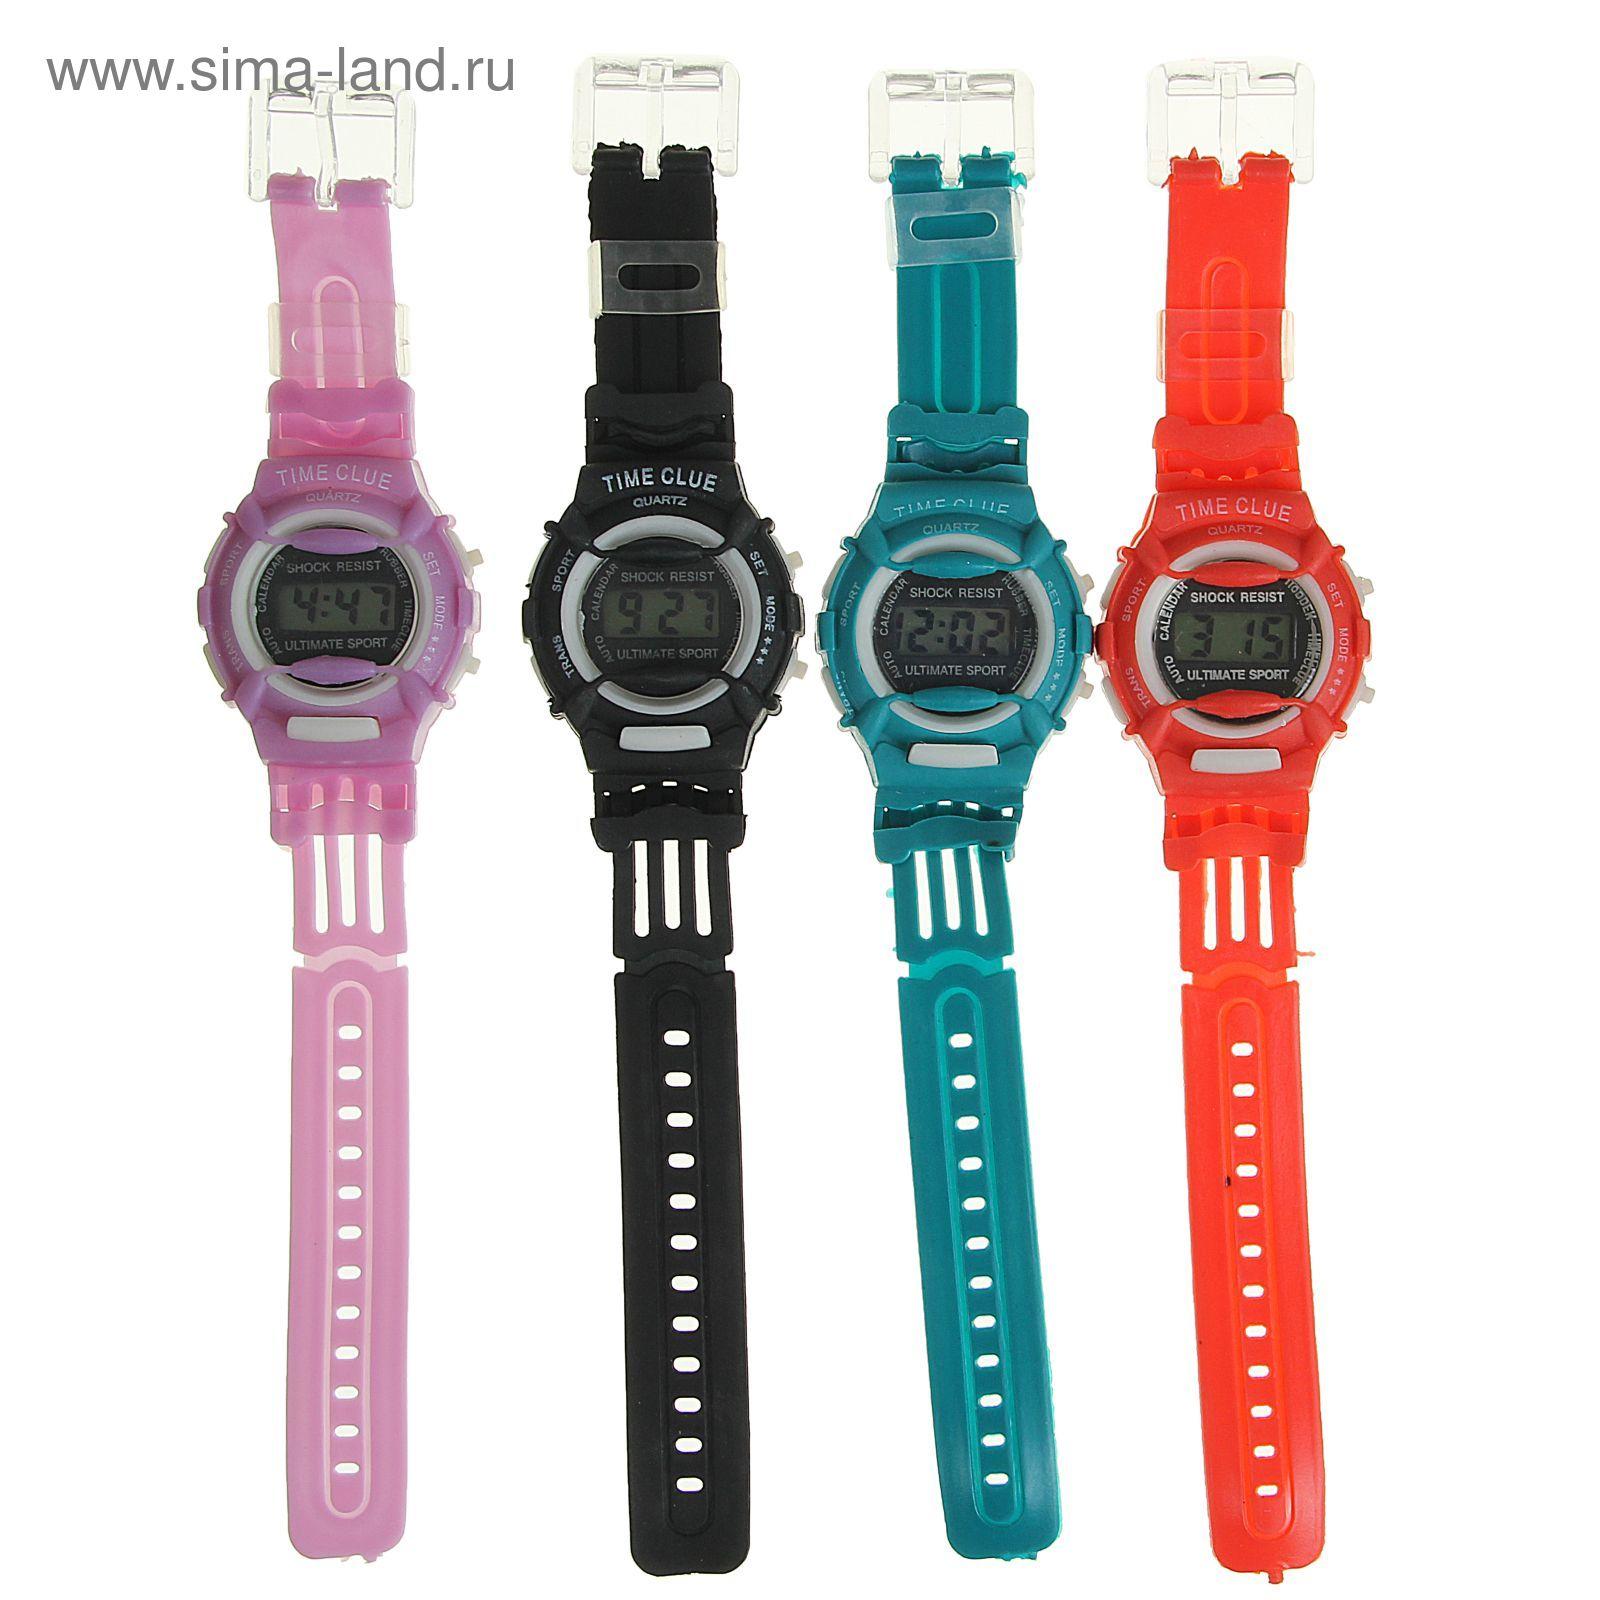 Часы наручные электронные Sports watches, детские, с силиконовым ремешком, микс